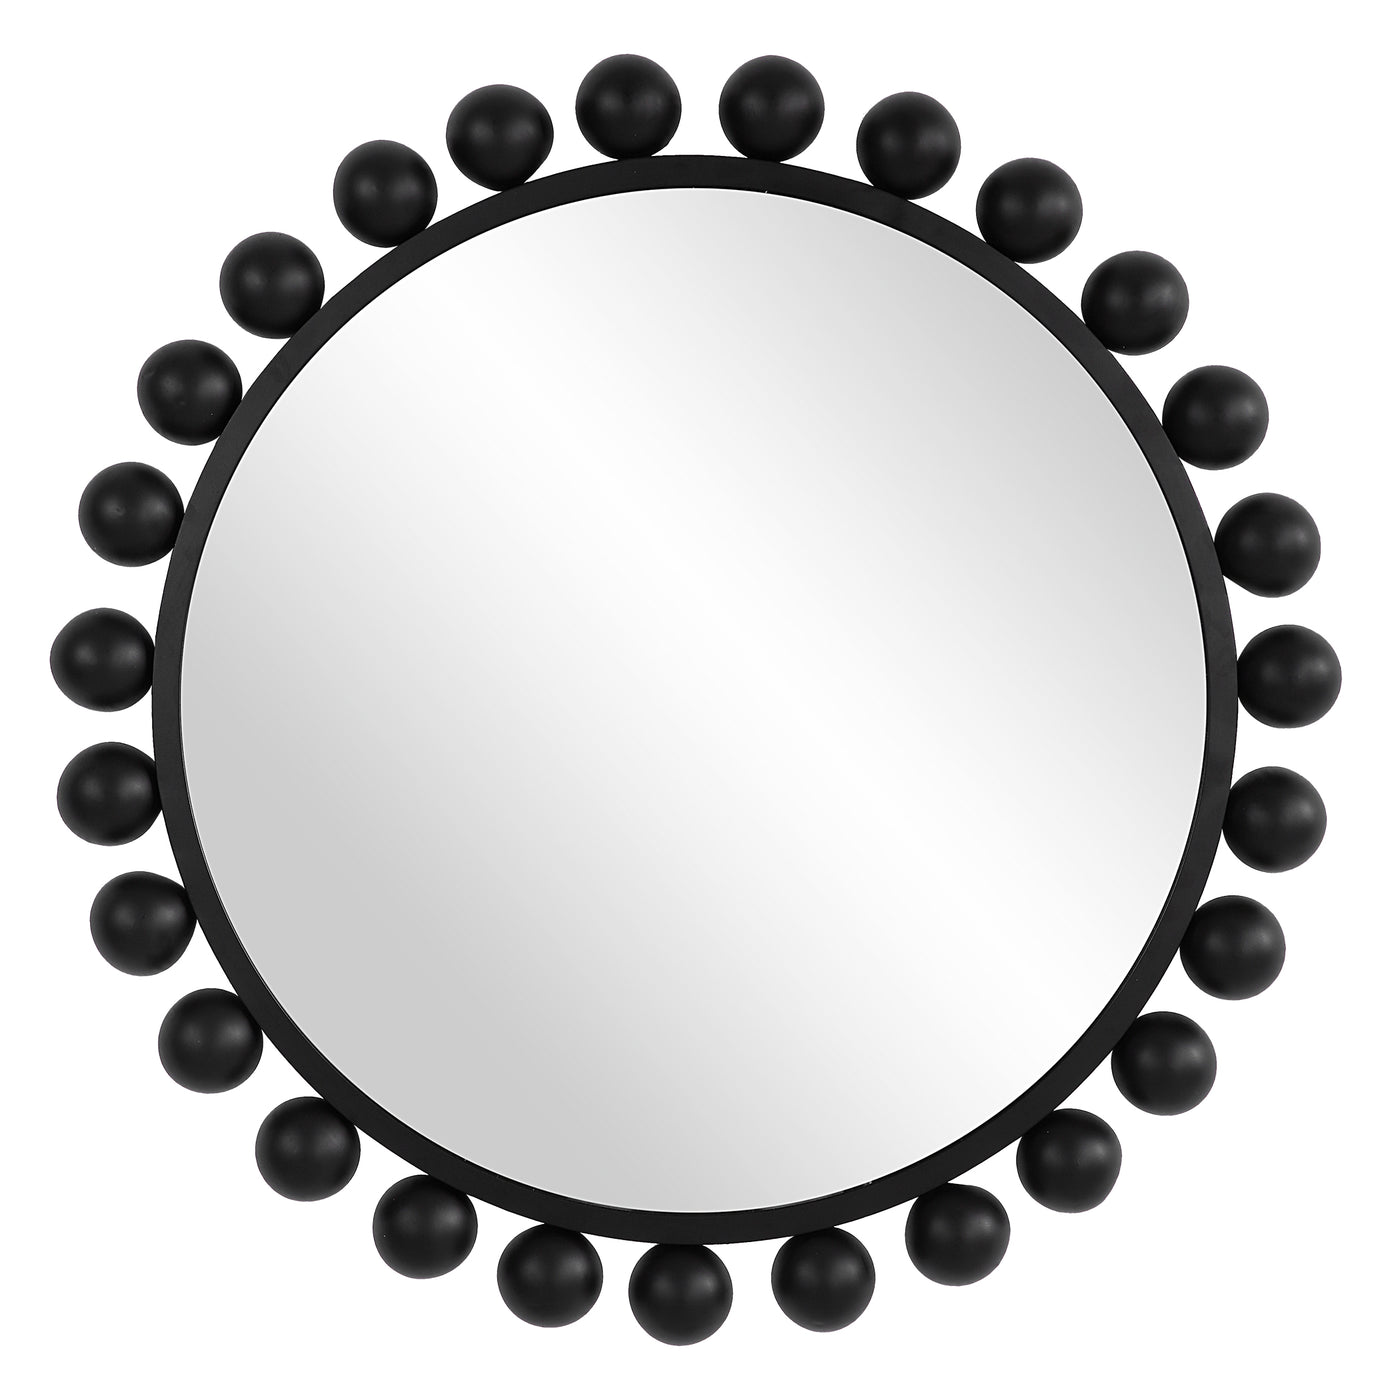 The Dorchester Mirror